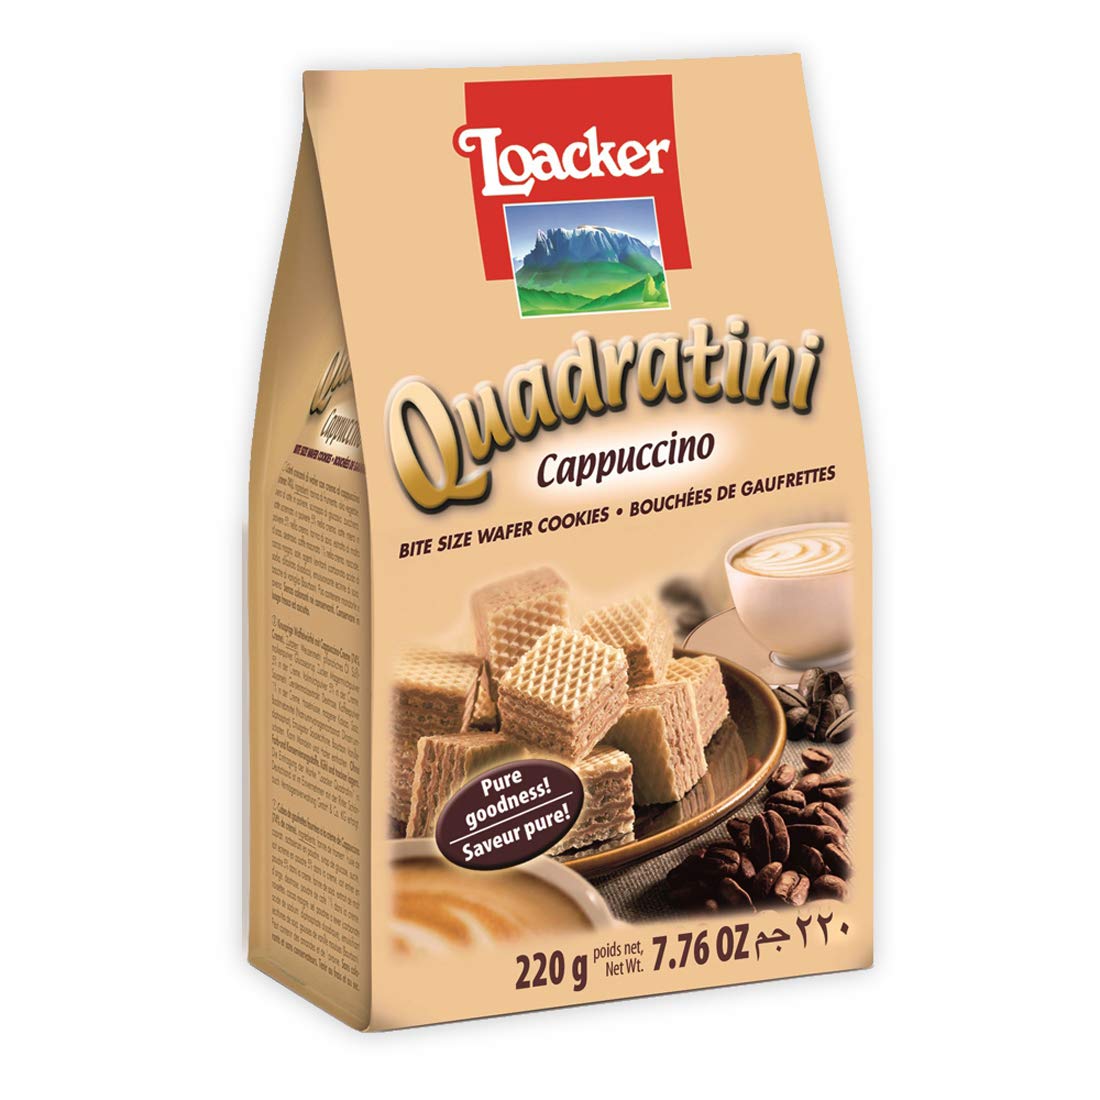 Buy Loacker Quadratini Cappuccino Wafer